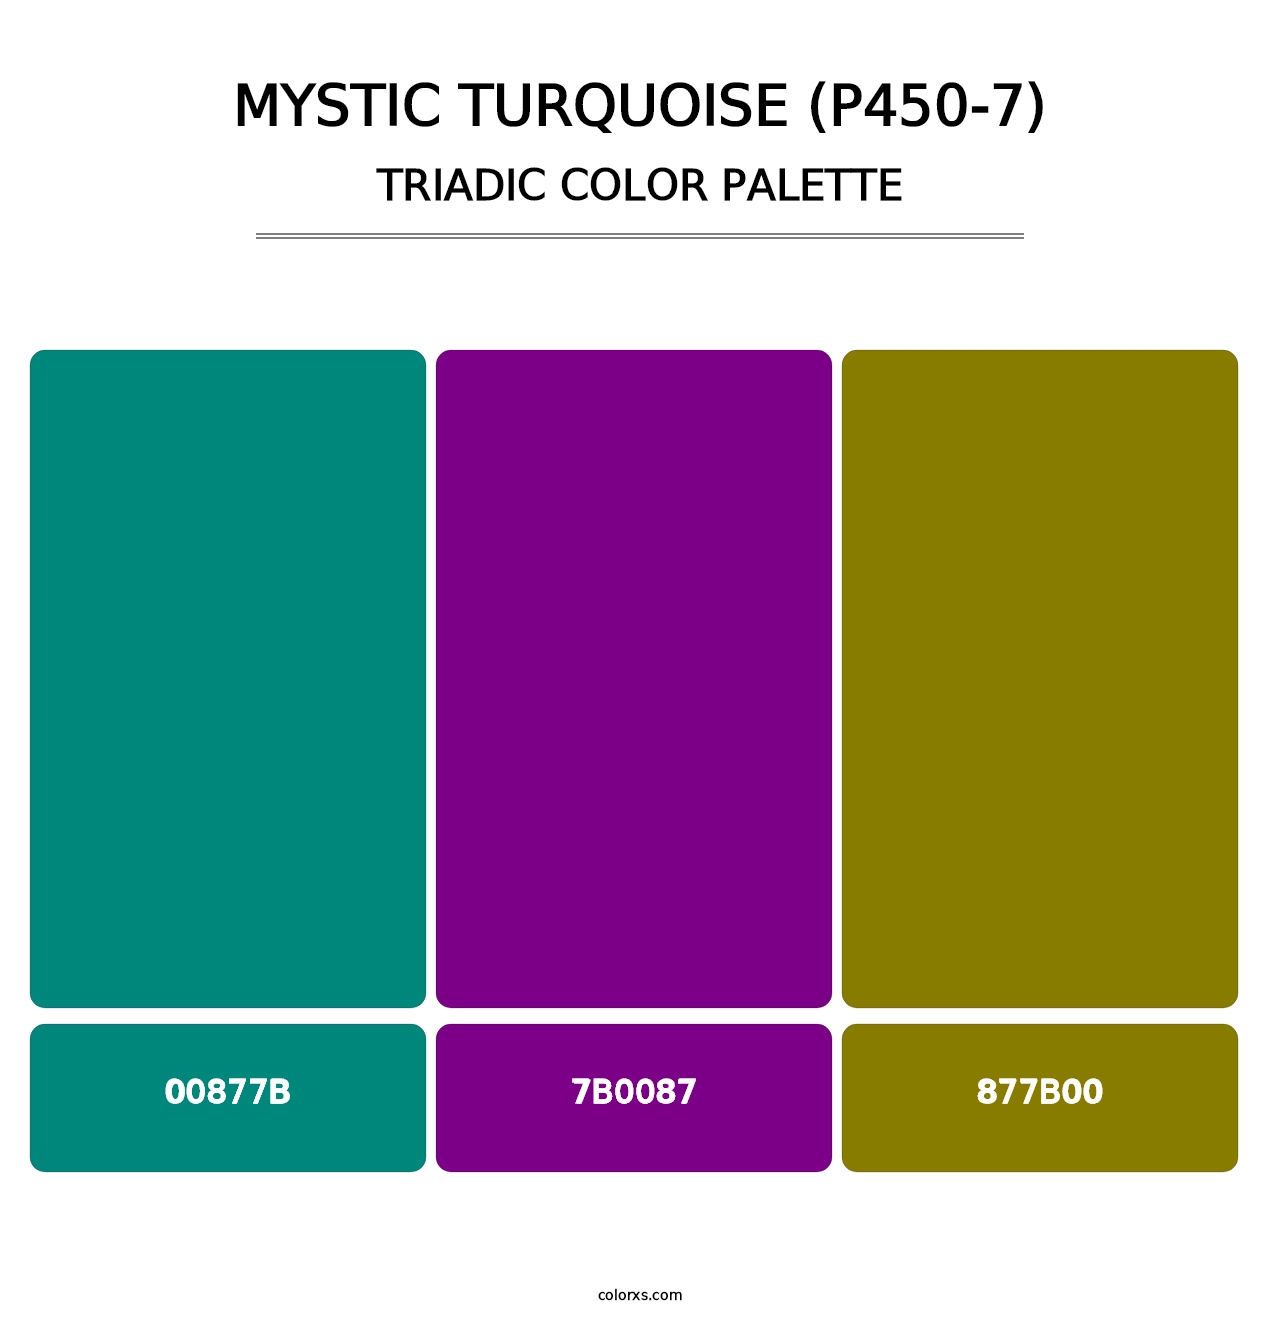 Mystic Turquoise (P450-7) - Triadic Color Palette